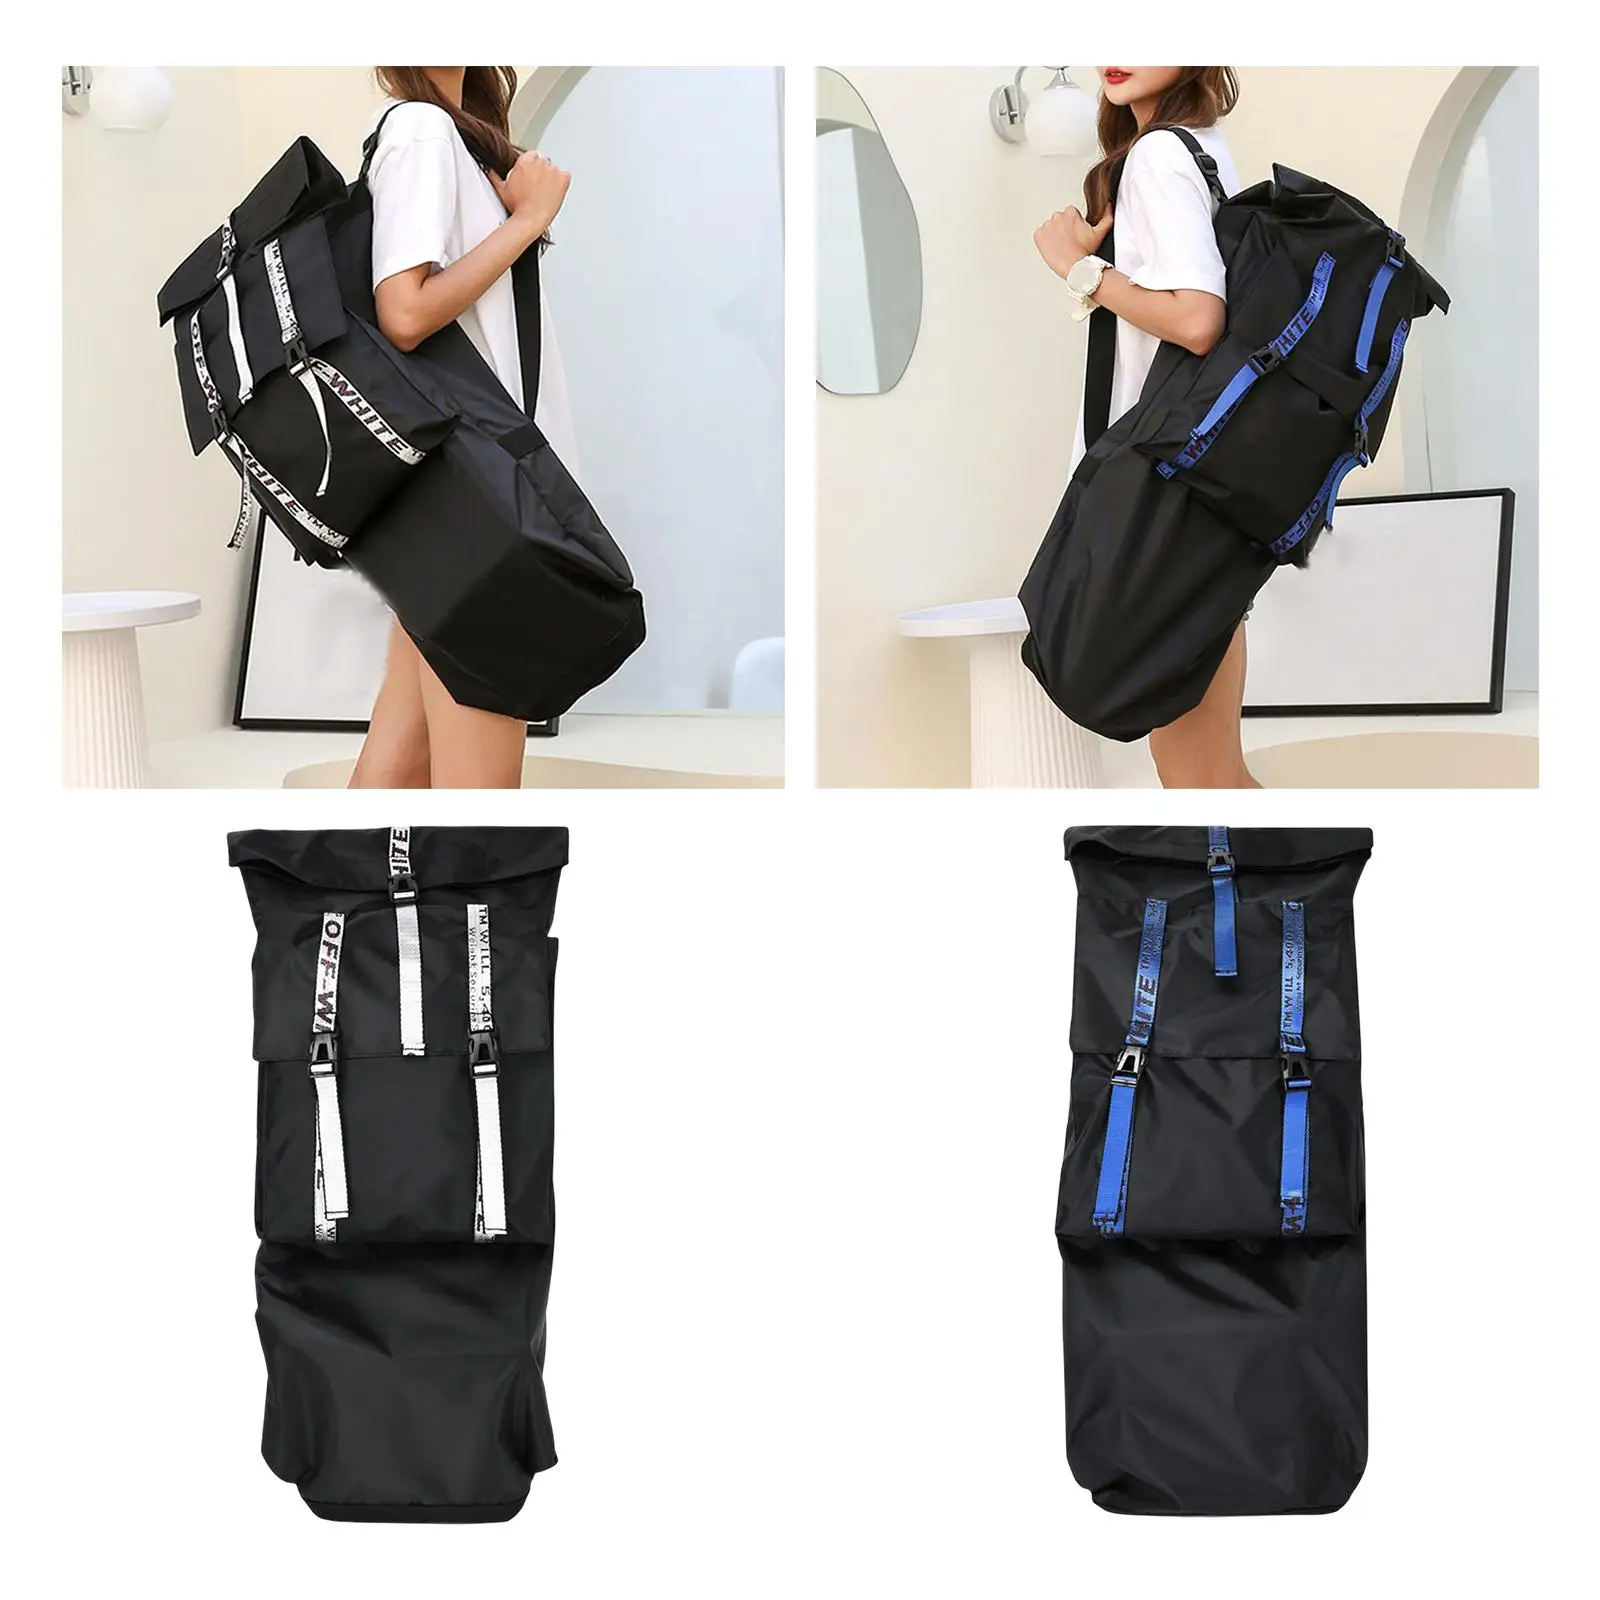 Skateboard Backpack Bag Longboard Carry Case with Adjustable Shoulder Strap